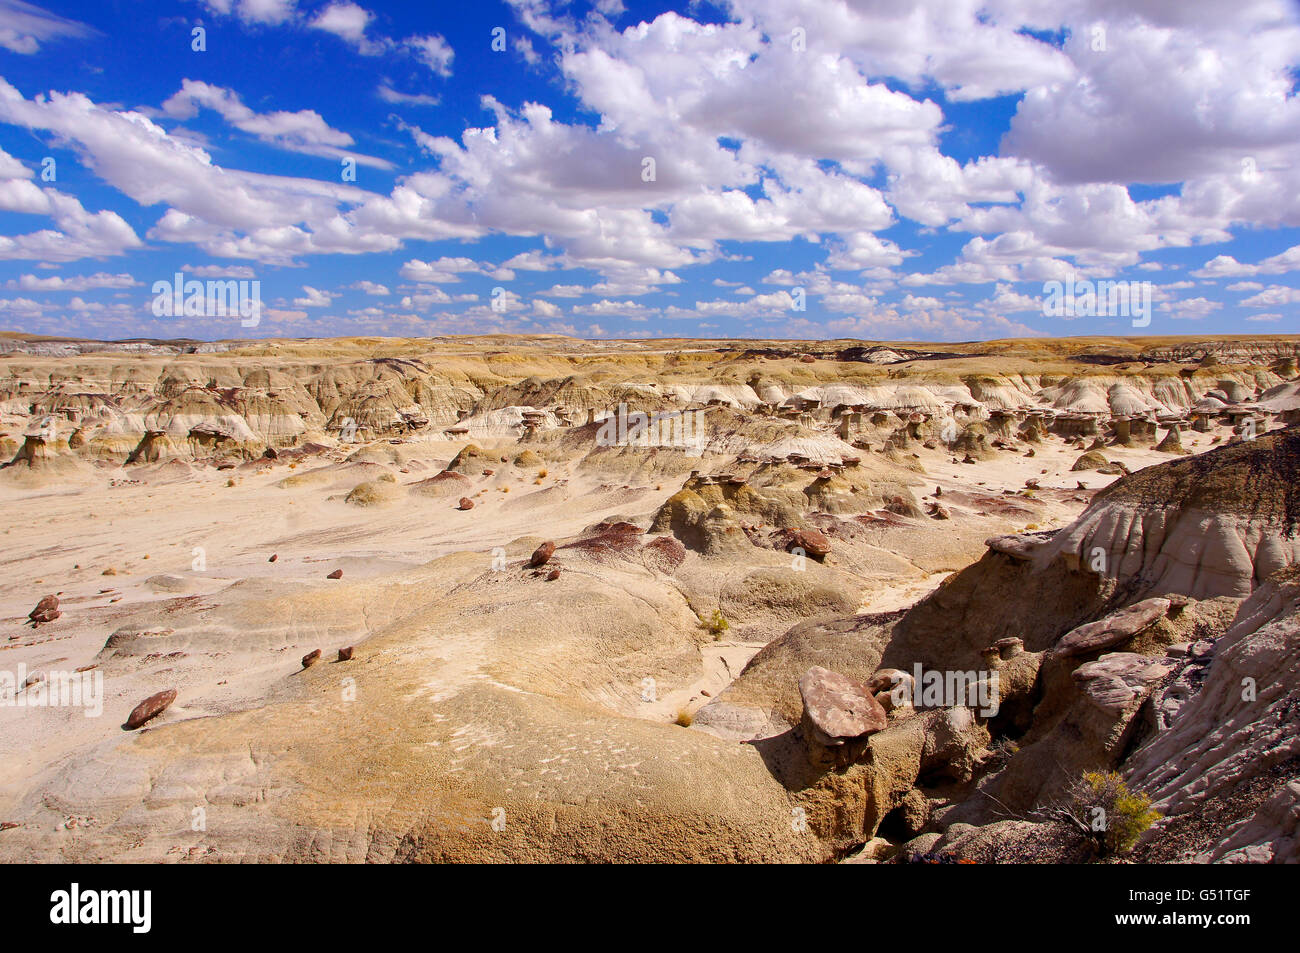 Desierto Sle-Pah Ah-Shi-Área de estudio, un parque nacional ubicado en Nuevo México en los Estados Unidos. Foto de stock